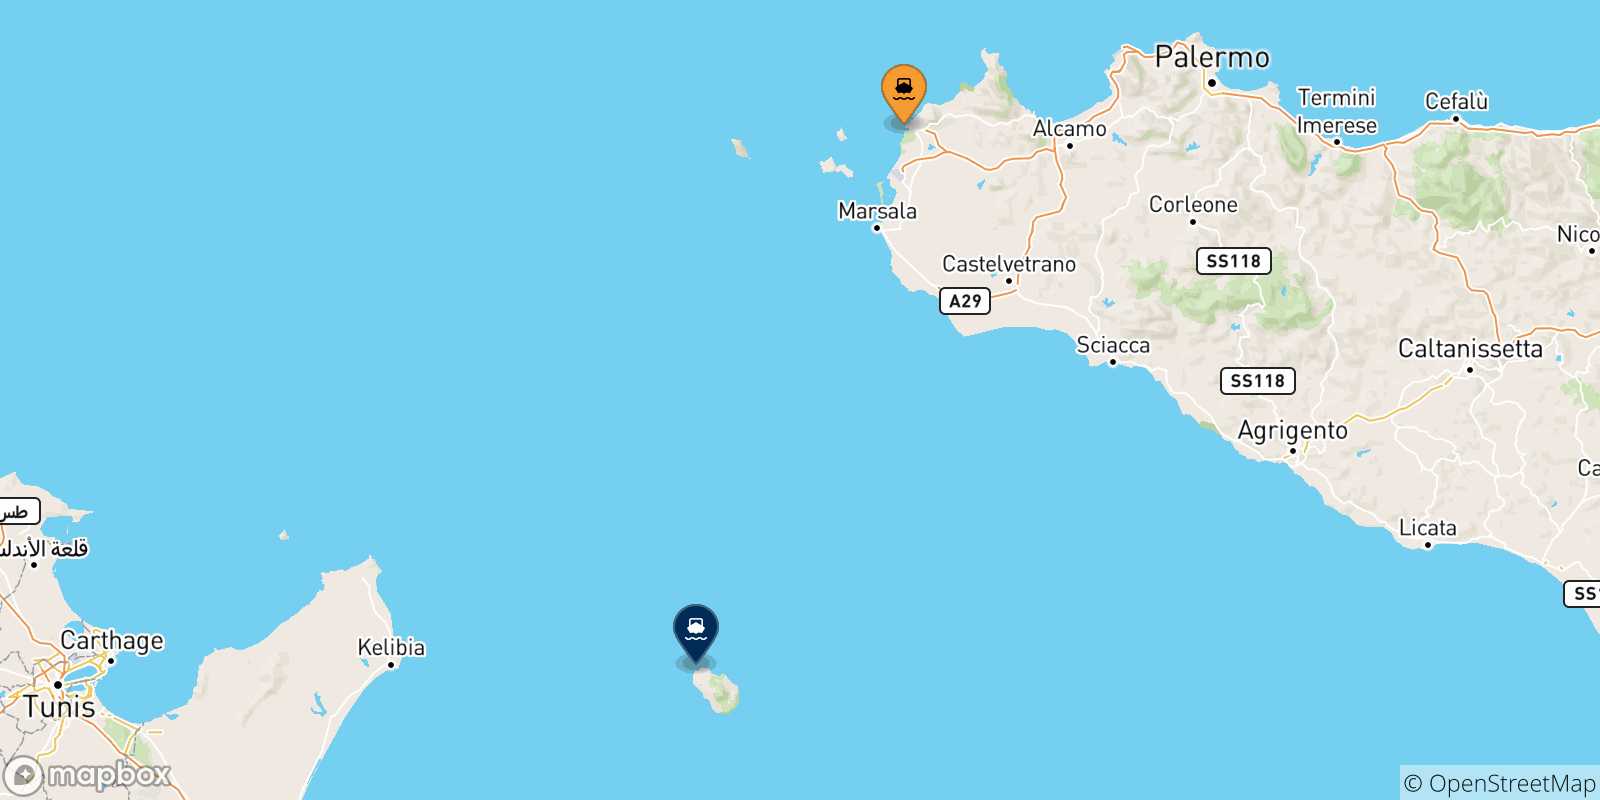 Mappa delle possibili rotte tra la Sicilia e l'Isola Di Pantelleria